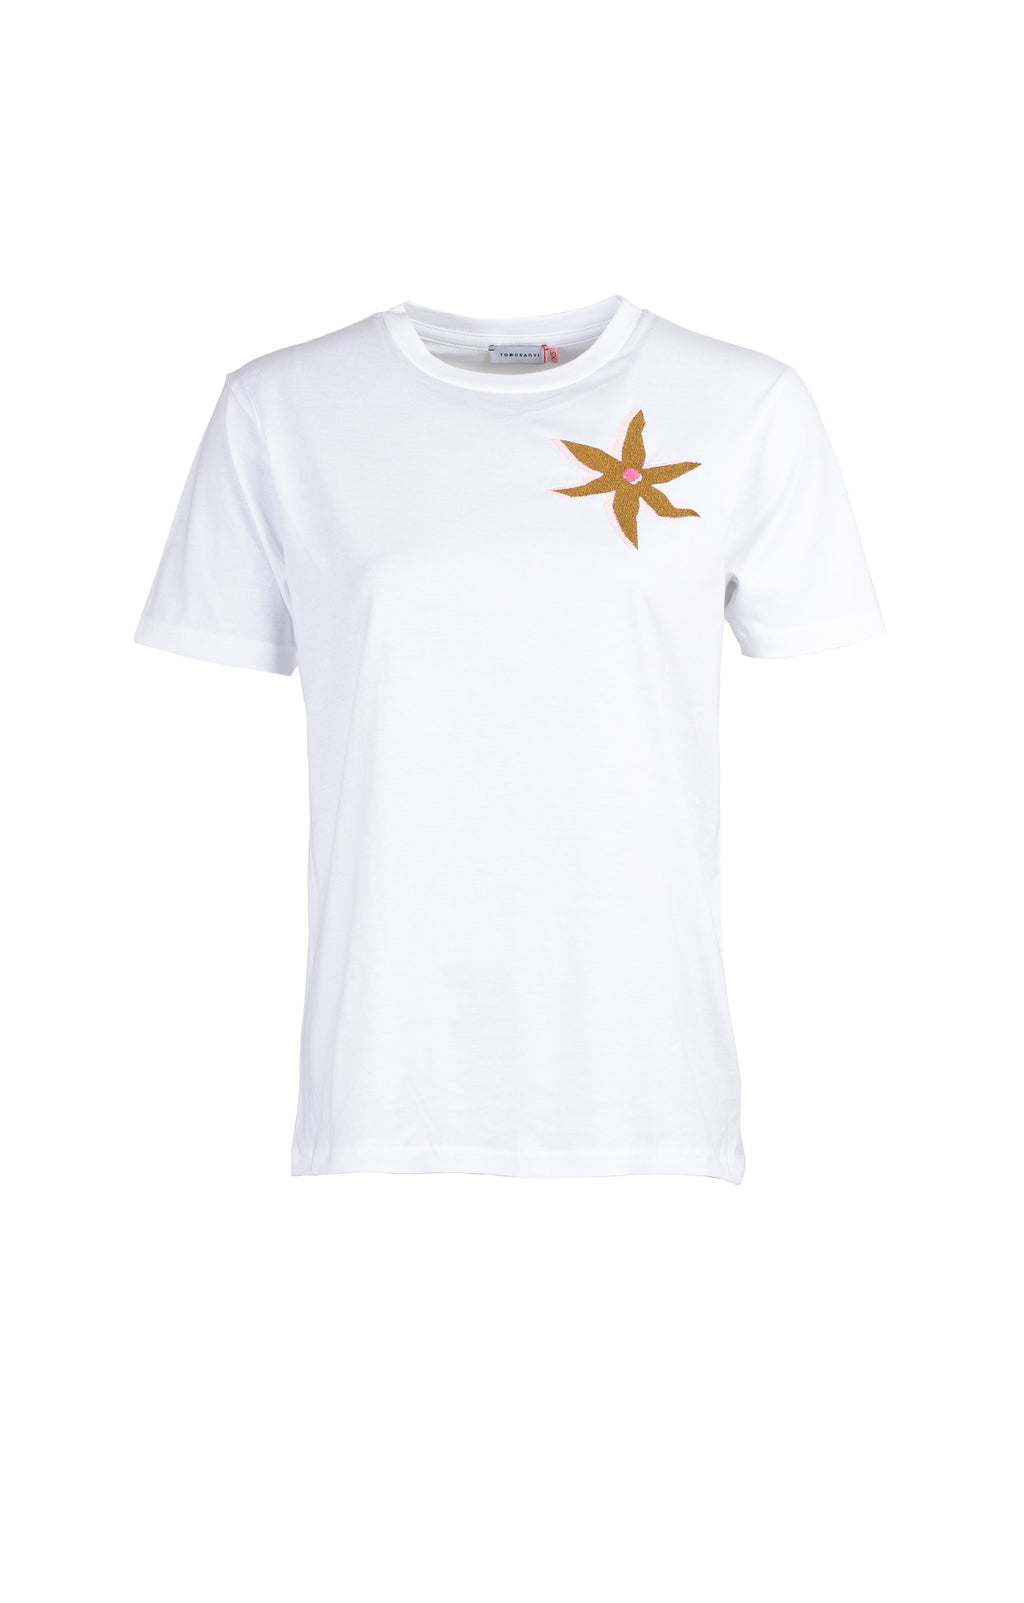 STARFLOWER T-shirt 'white'